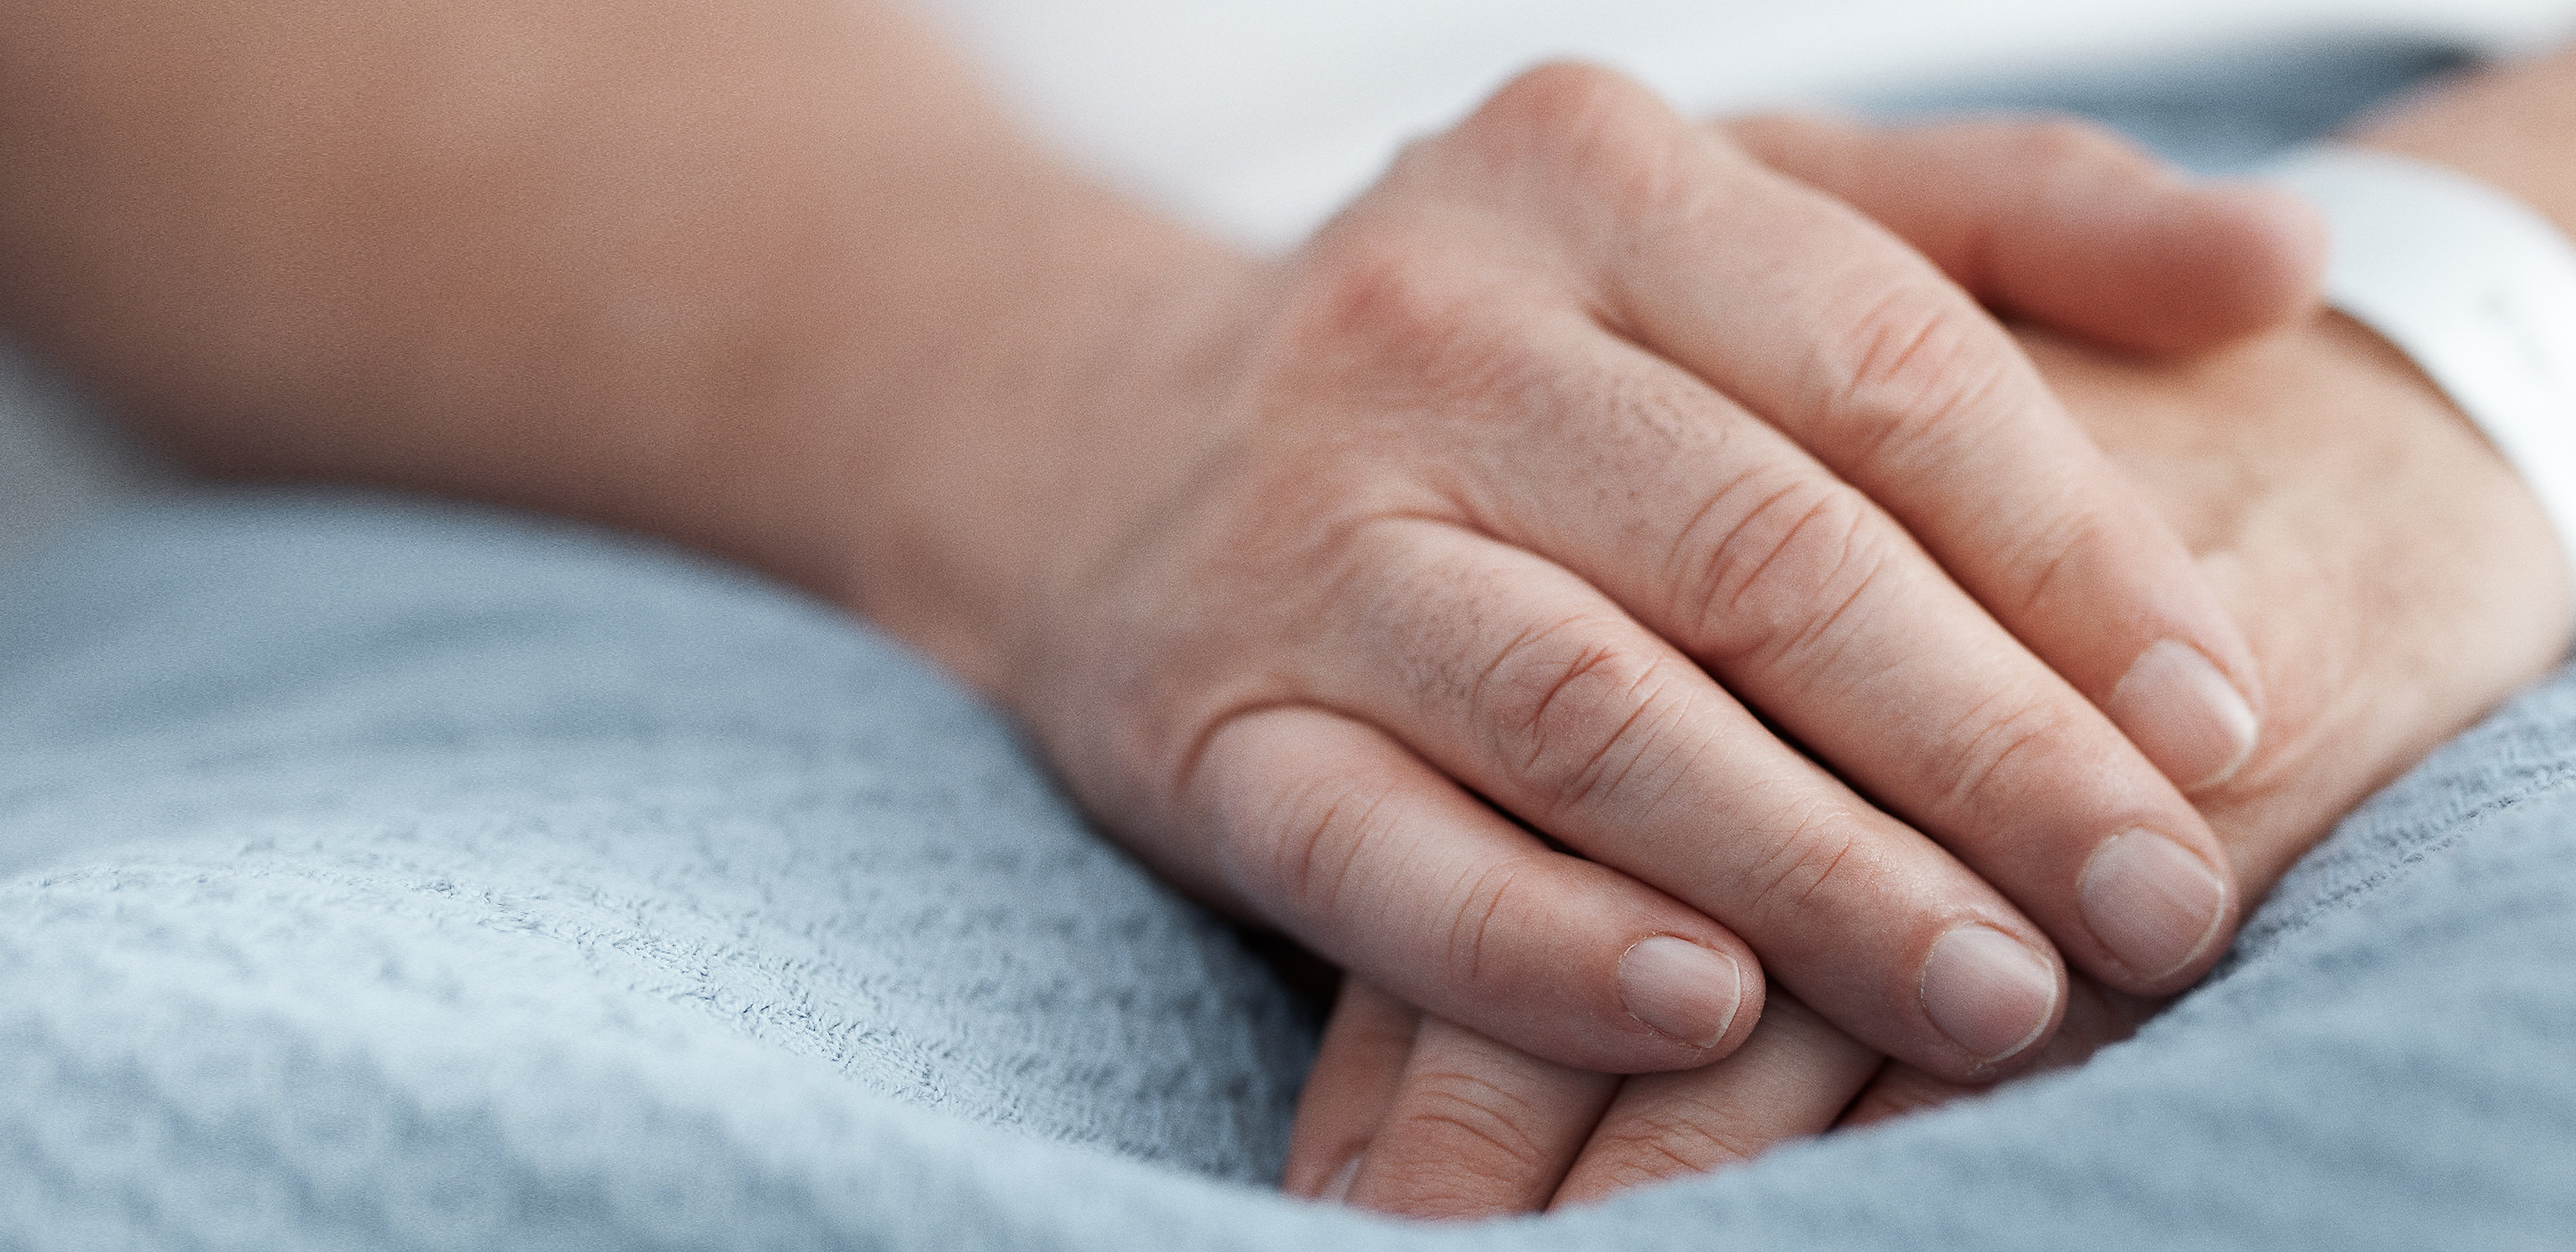 Les mains d'un patient sont posées paisiblement sur sa couverture dans un lit d'hôpital